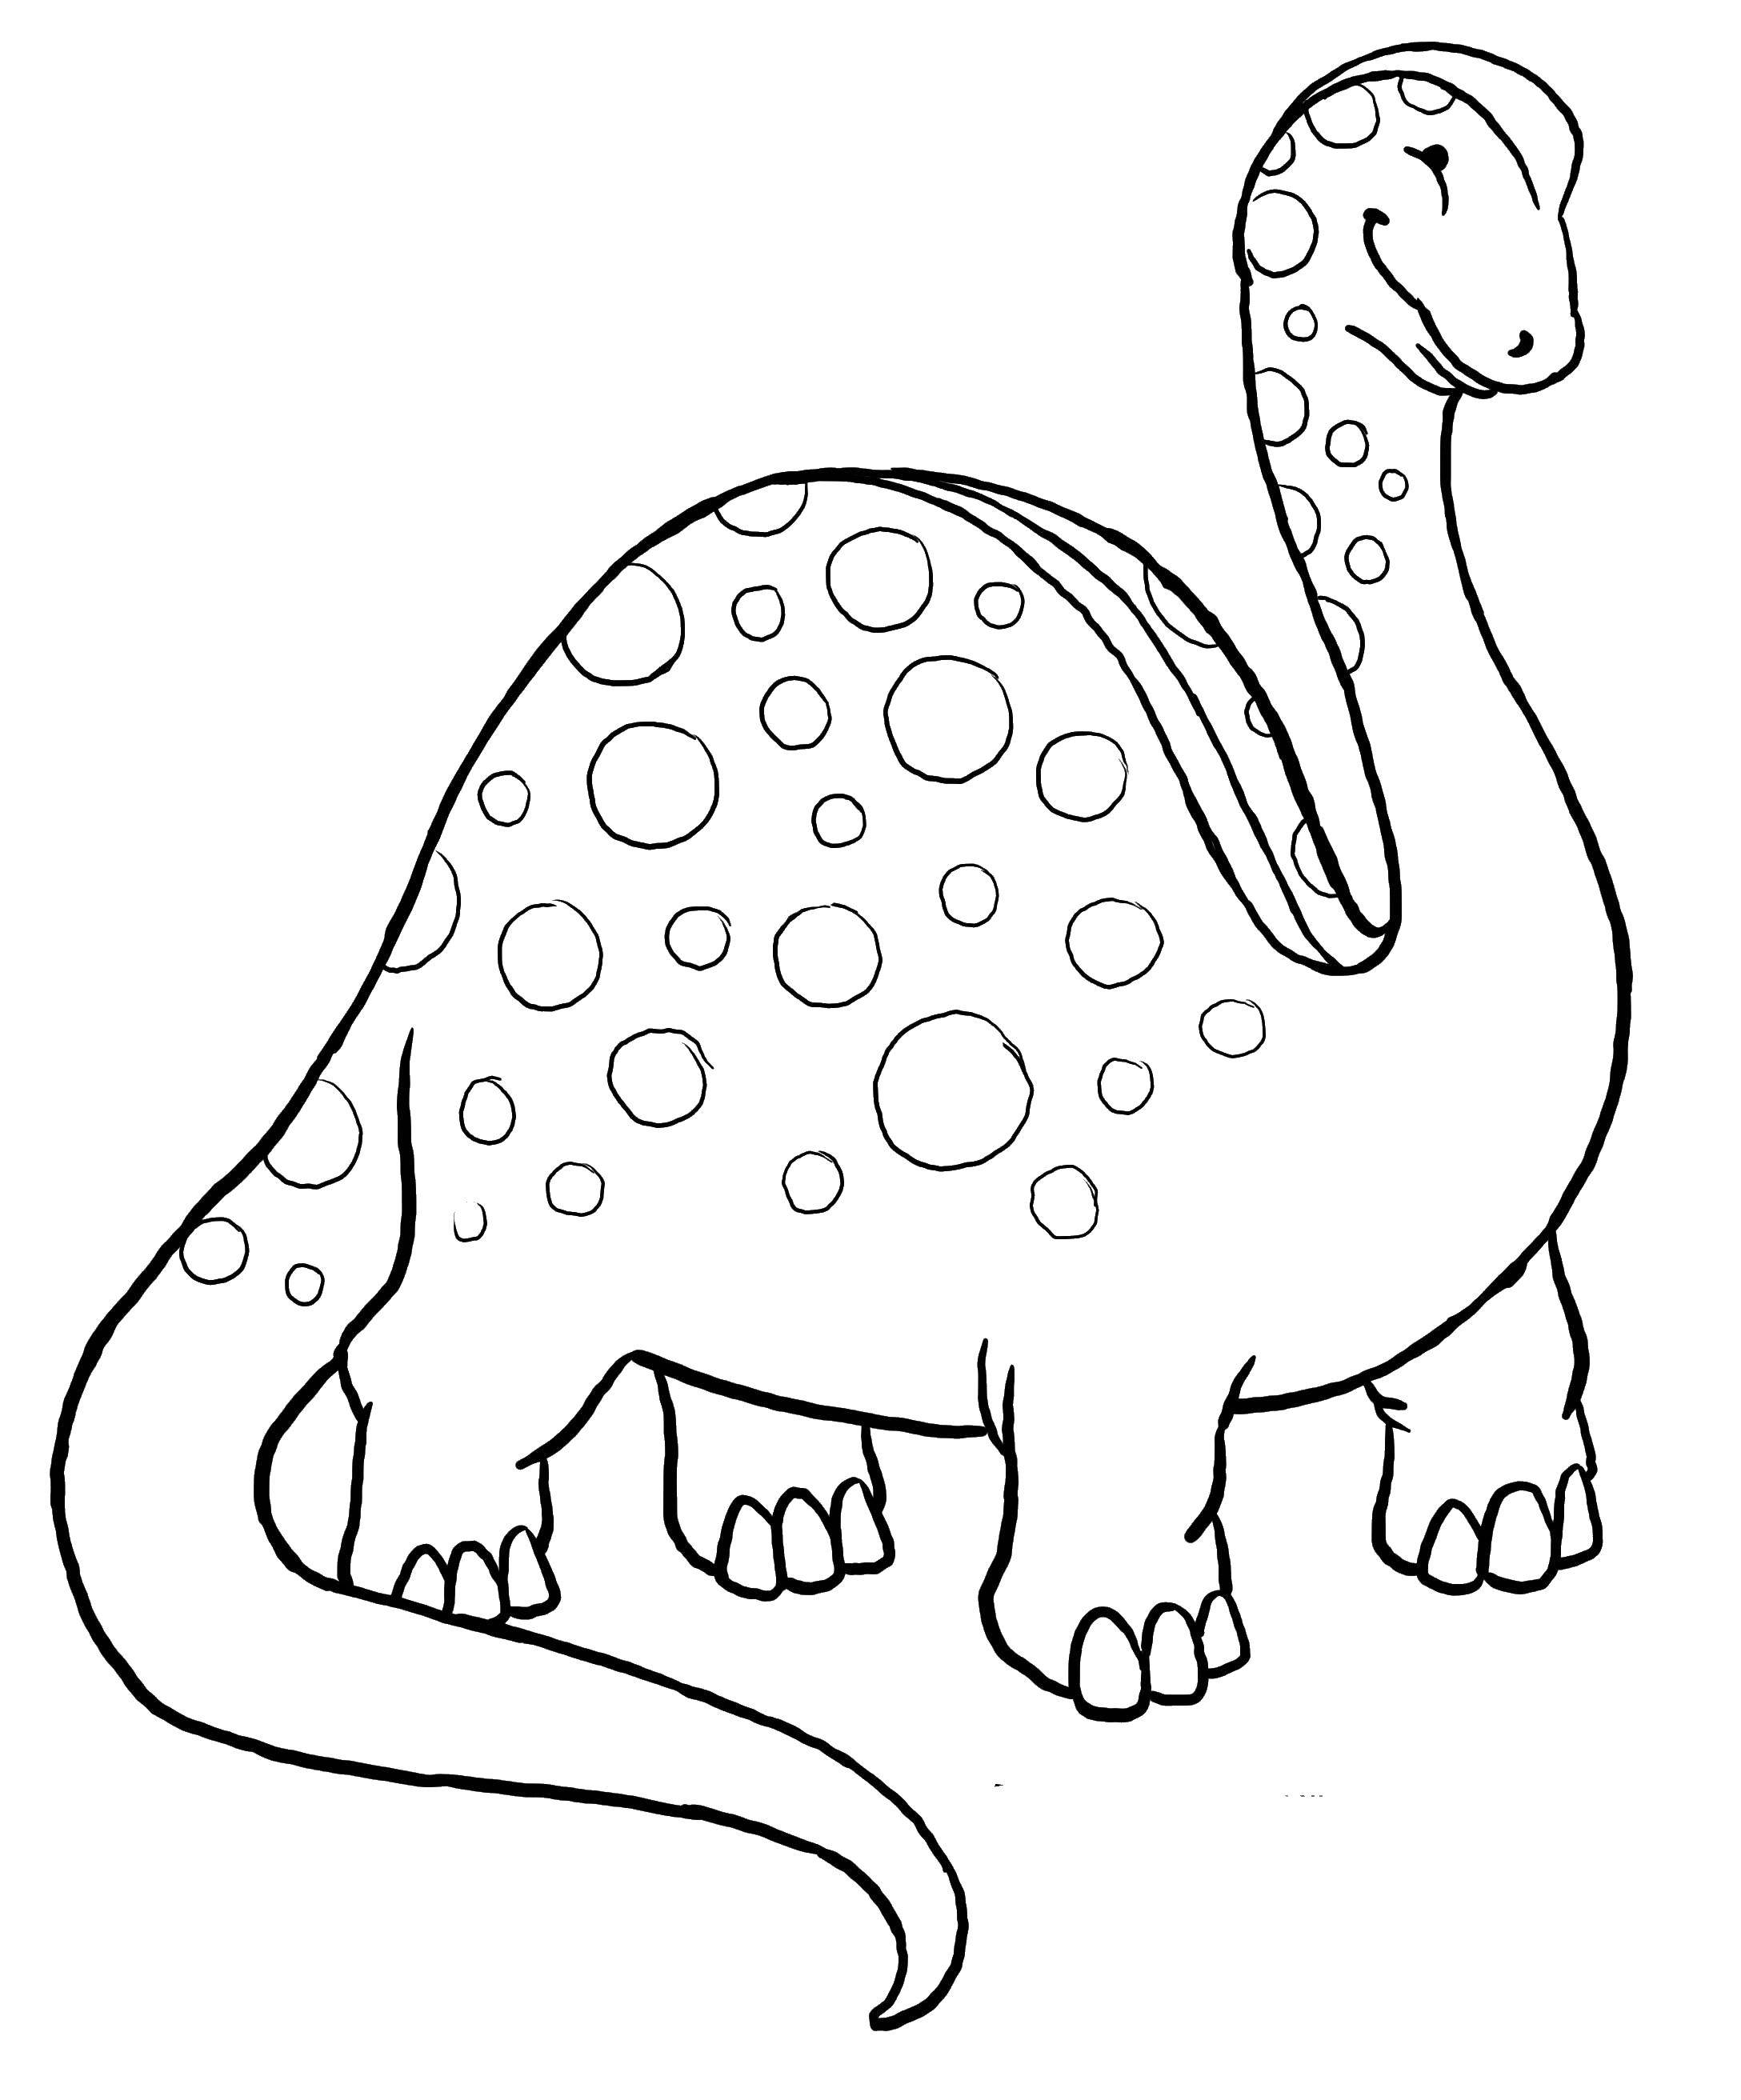 Динозавры для раскрашивания. Динозавры / раскраска. Динозавр раскраска для детей. Динозавры картинки раскраски. Картинка динозавра для детей раскраска.